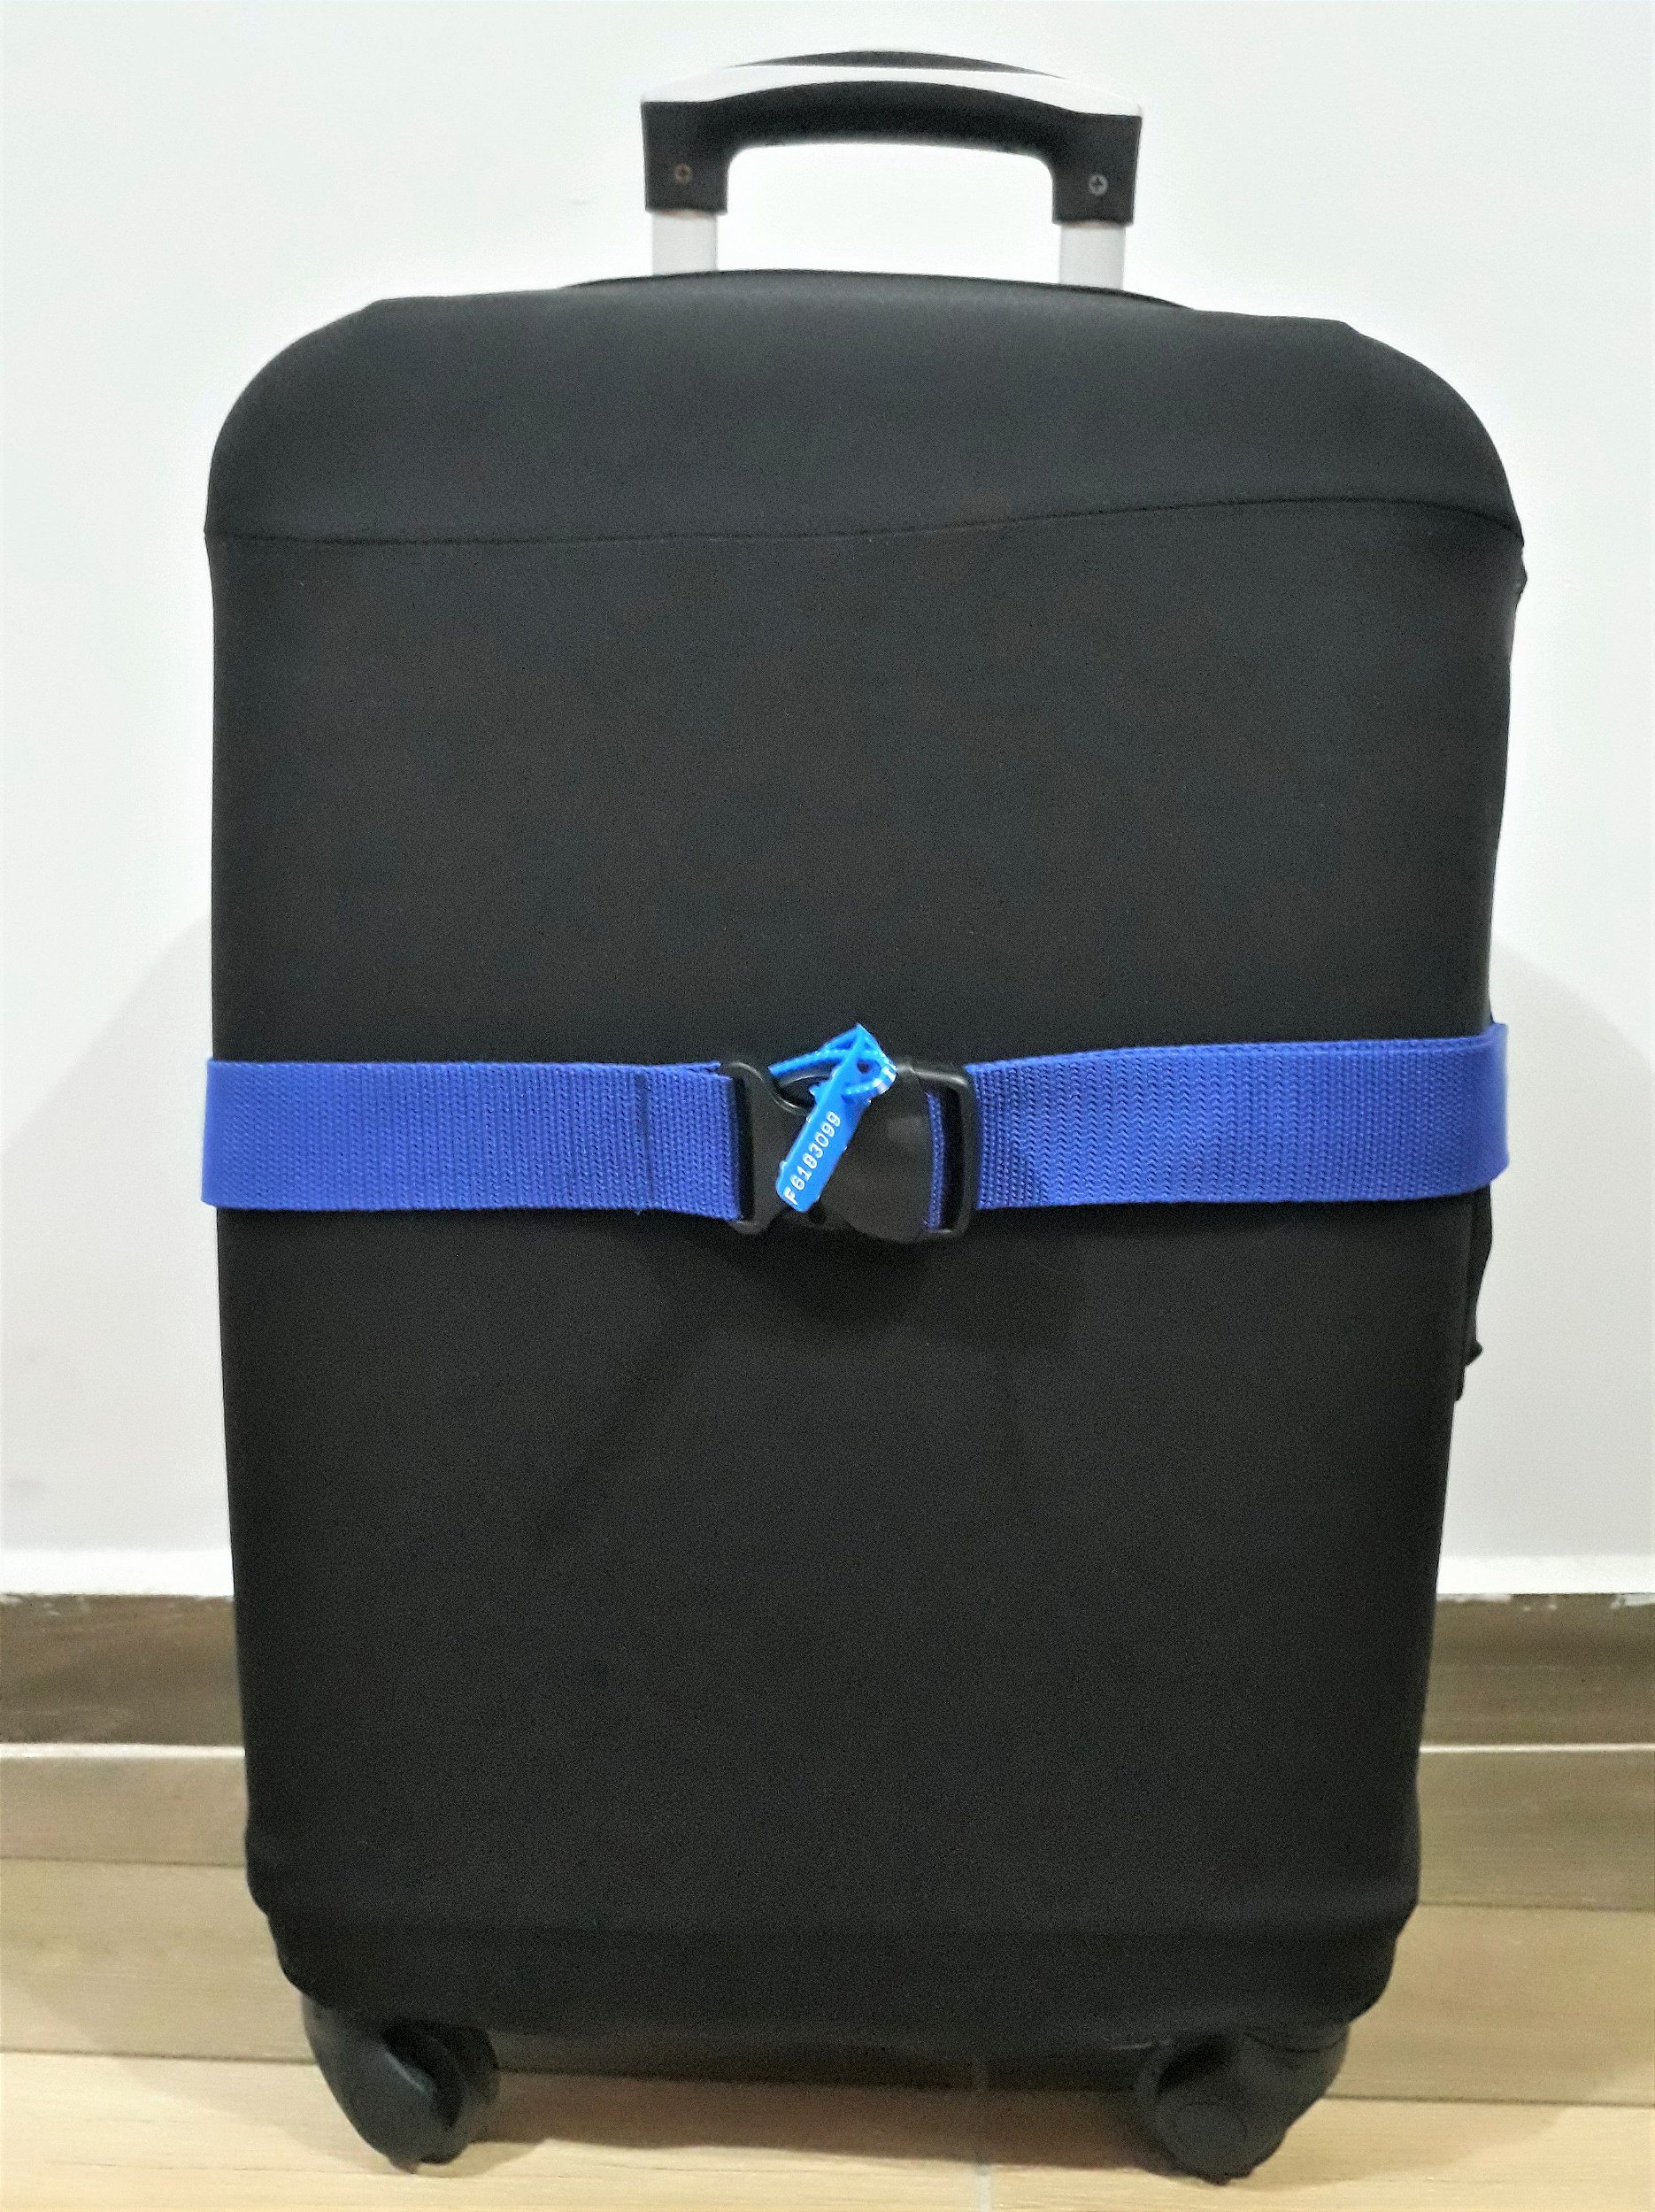 Cinta fita de proteção para mala de viagem (kit com duas) - Capas para malas  e Acessórios para viagem |RR Capas